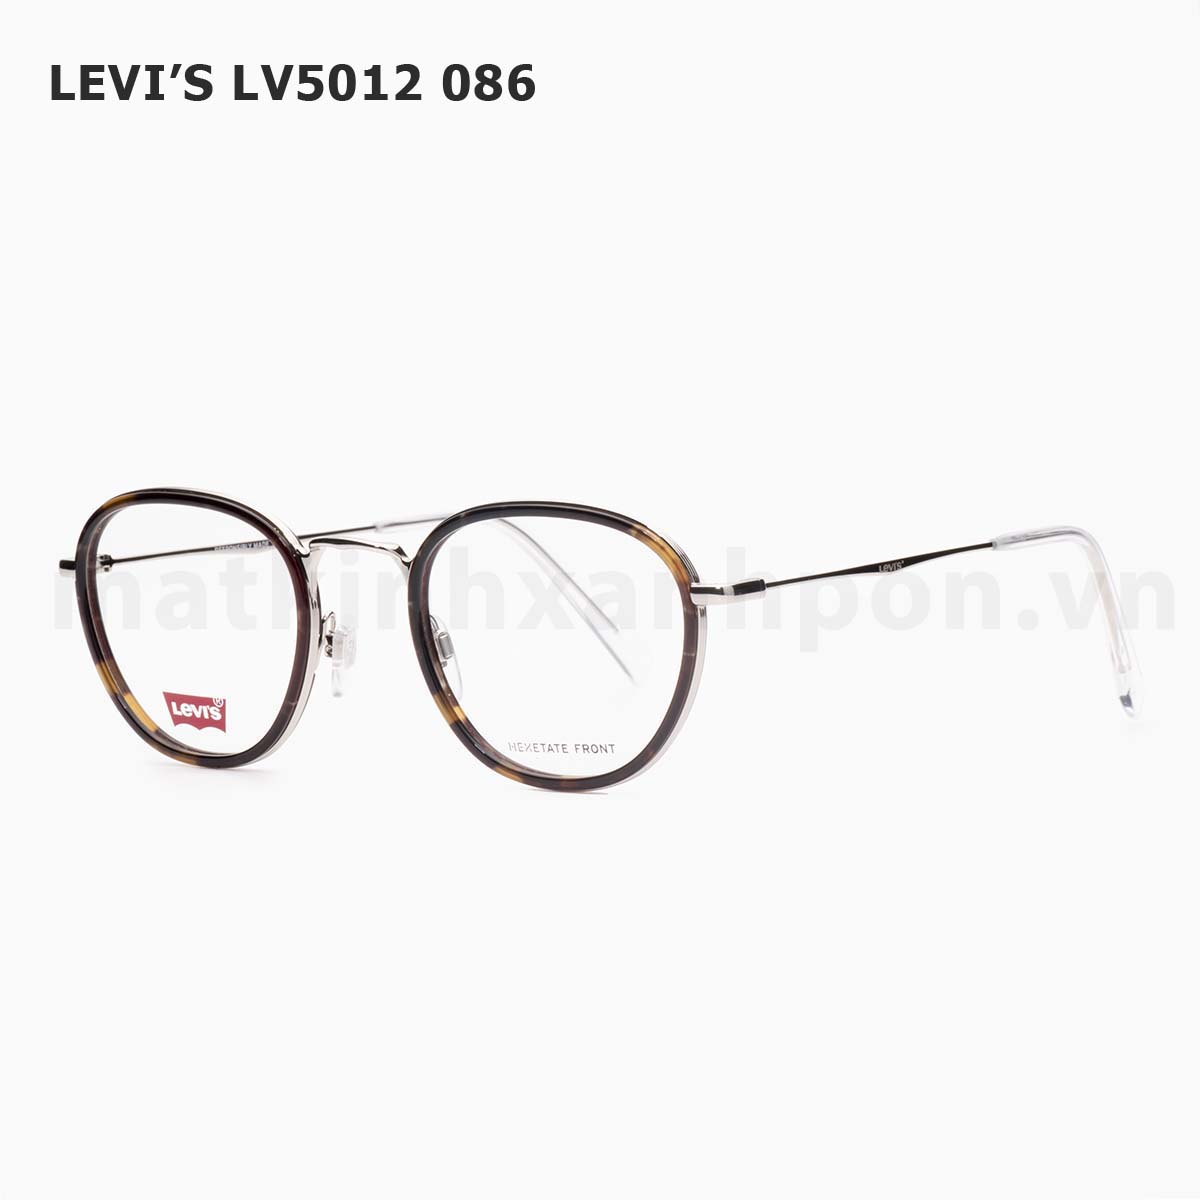 levi’s lV5012 086